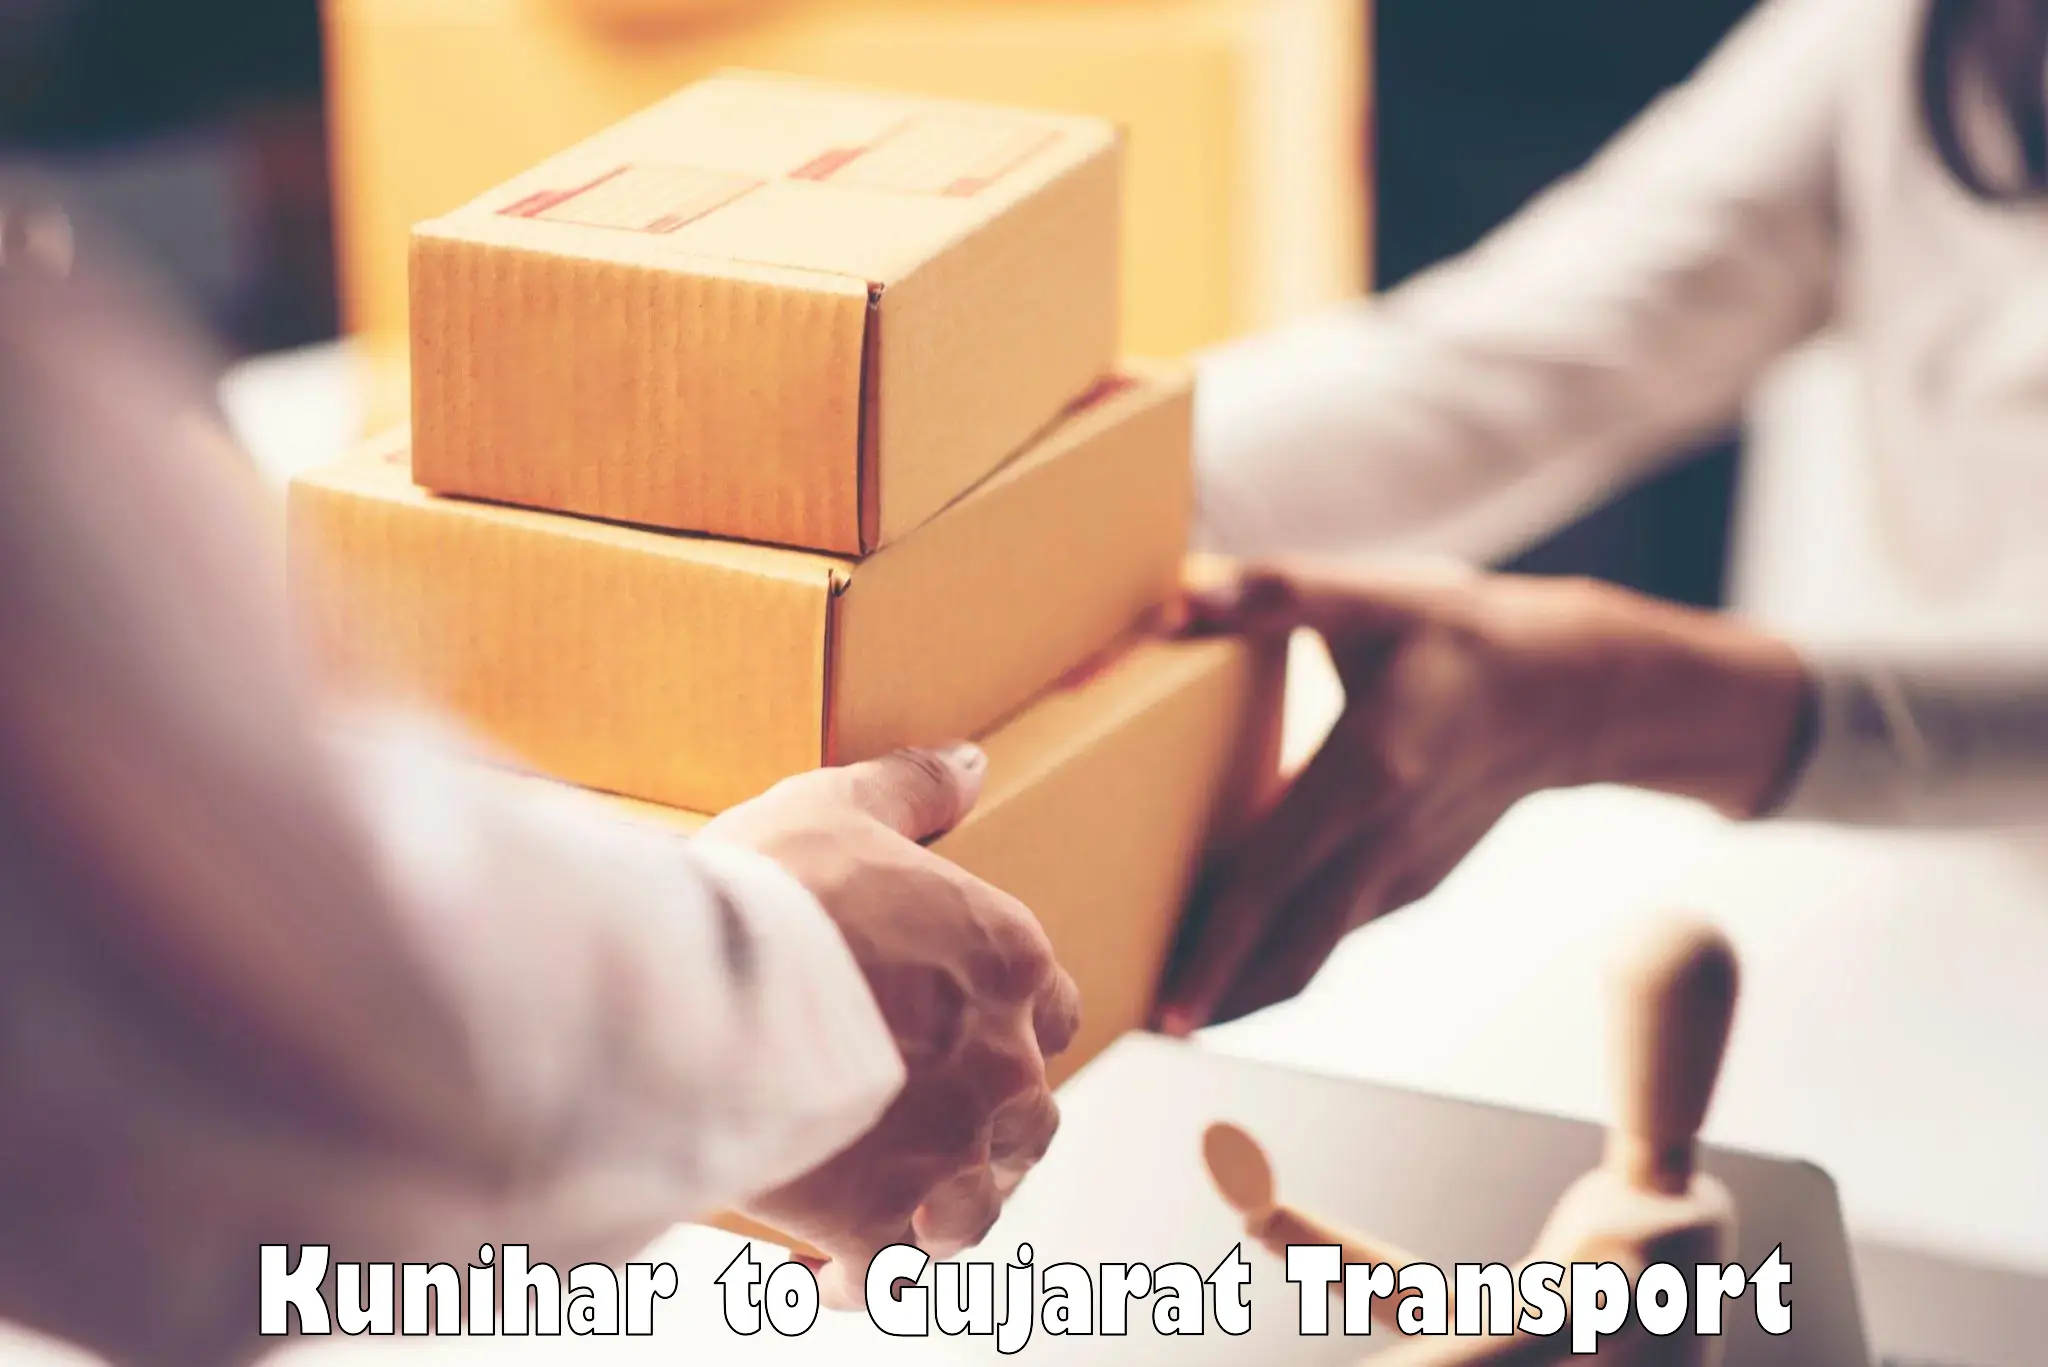 Transport in sharing Kunihar to Chotila